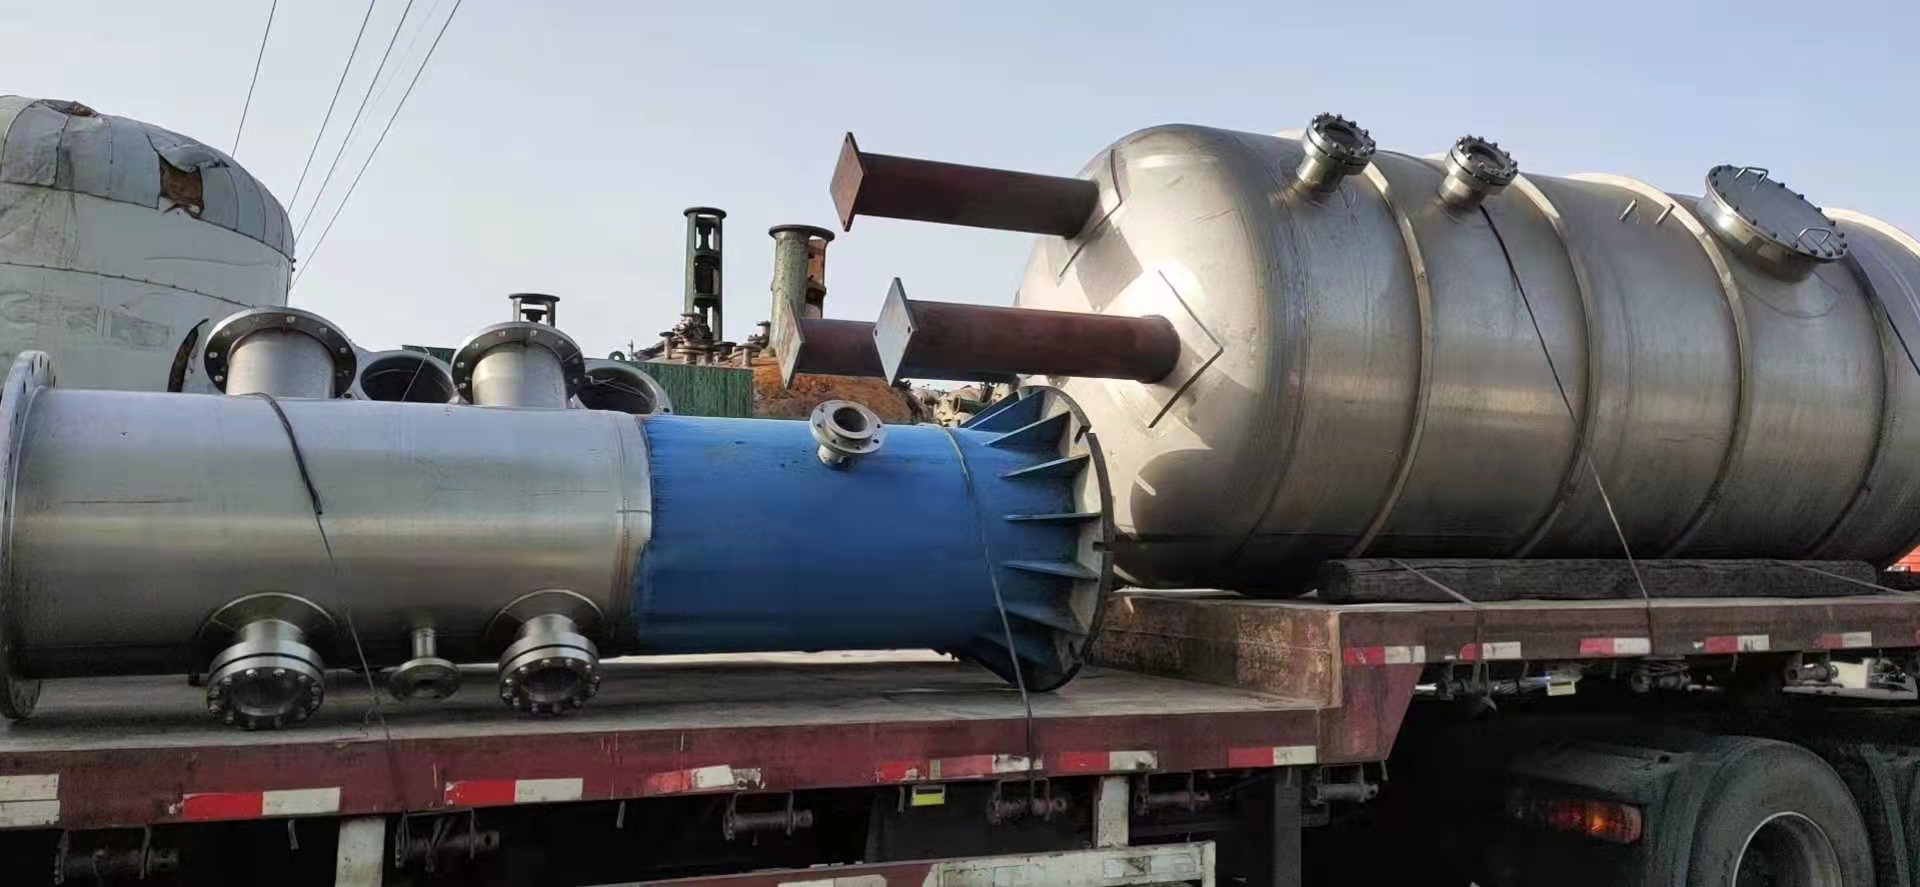 材质316L 到货5吨双效降膜蒸发器一套 各种型号二手蒸发器 各种二手MVR蒸发器 各种型号二手强制循环蒸发器8